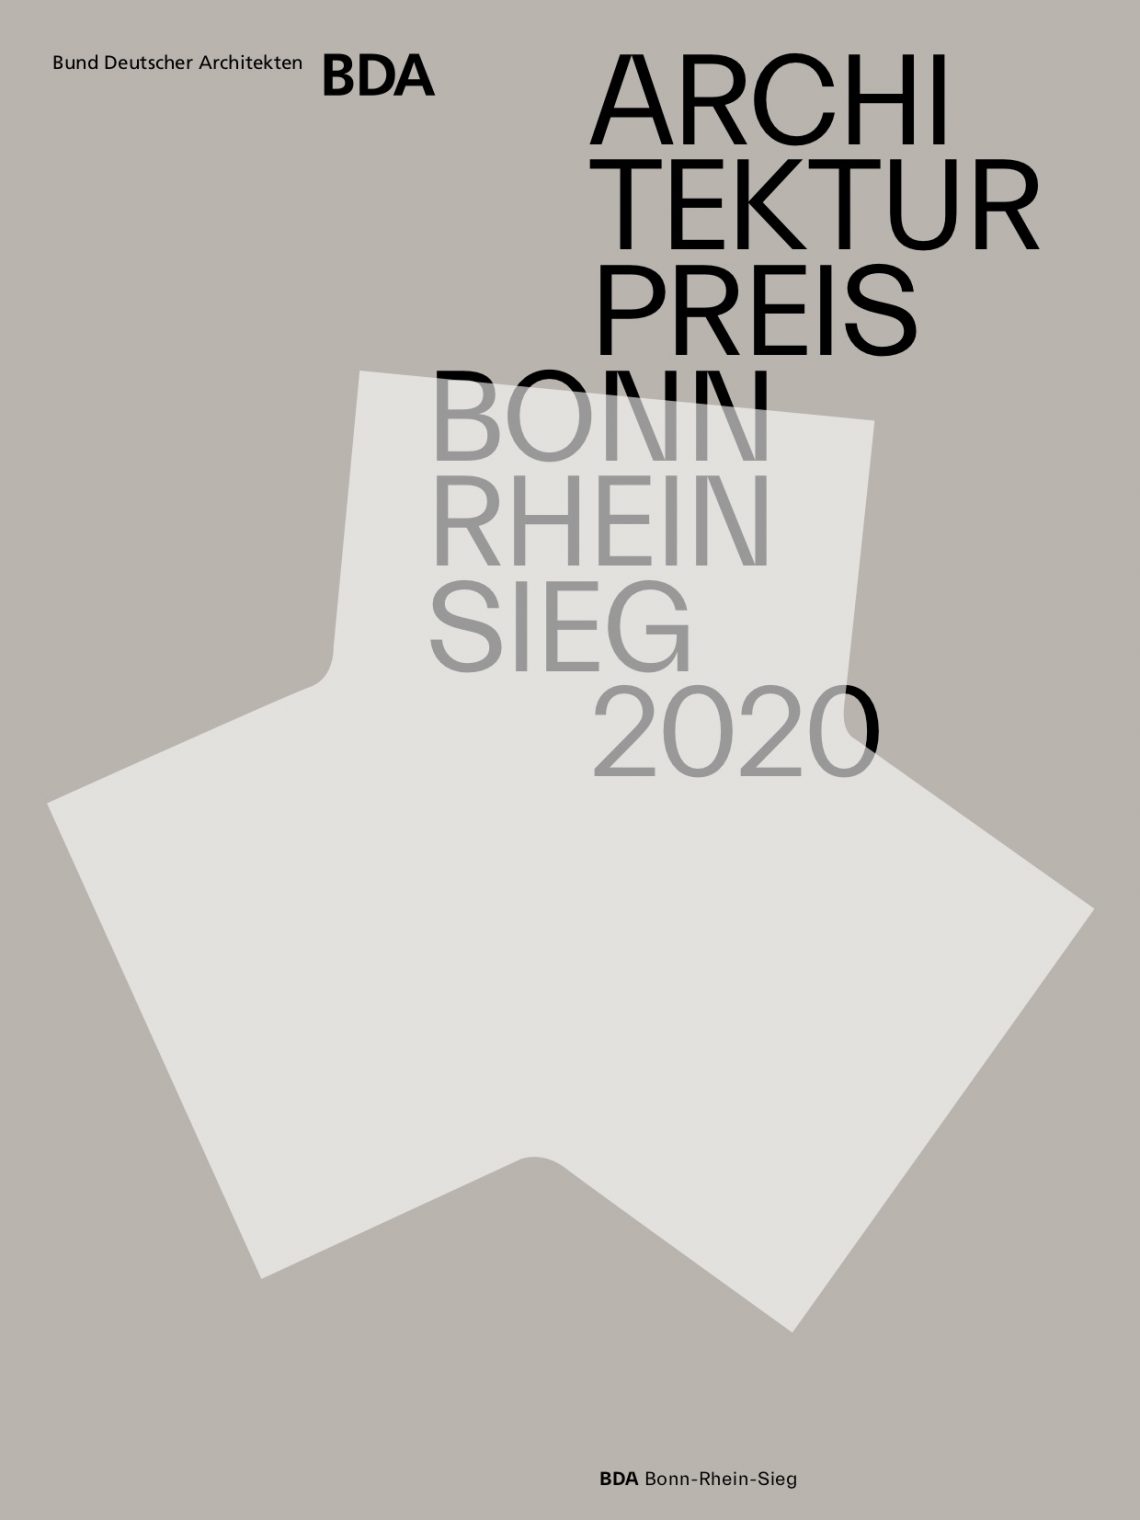 Architekturpreis Bonn/Rhein-Sieg 